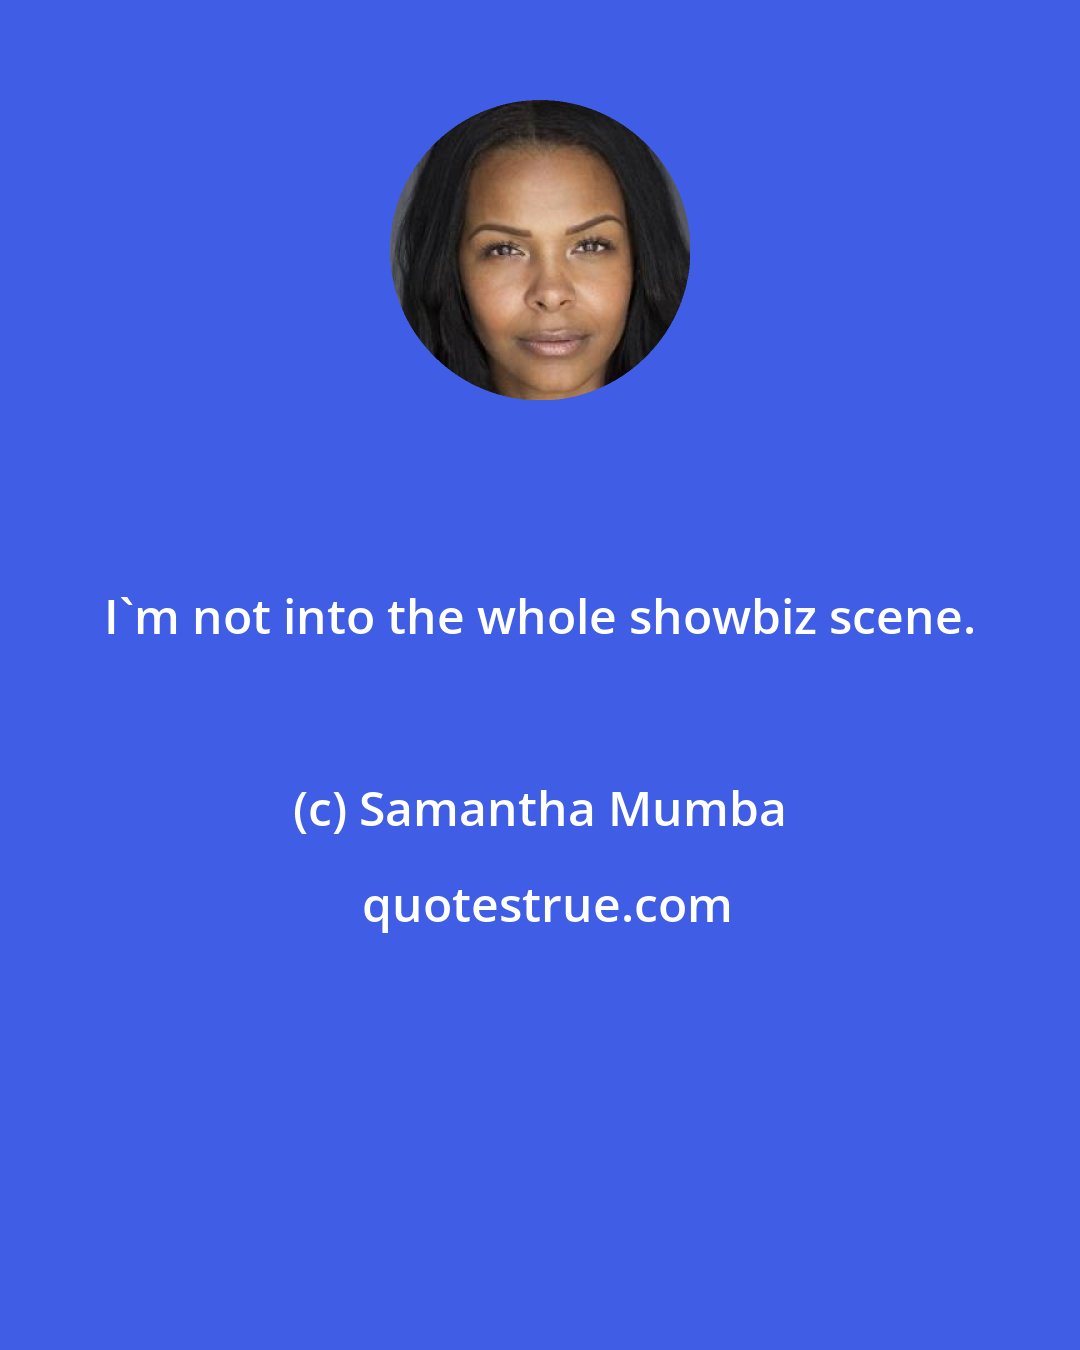 Samantha Mumba: I'm not into the whole showbiz scene.